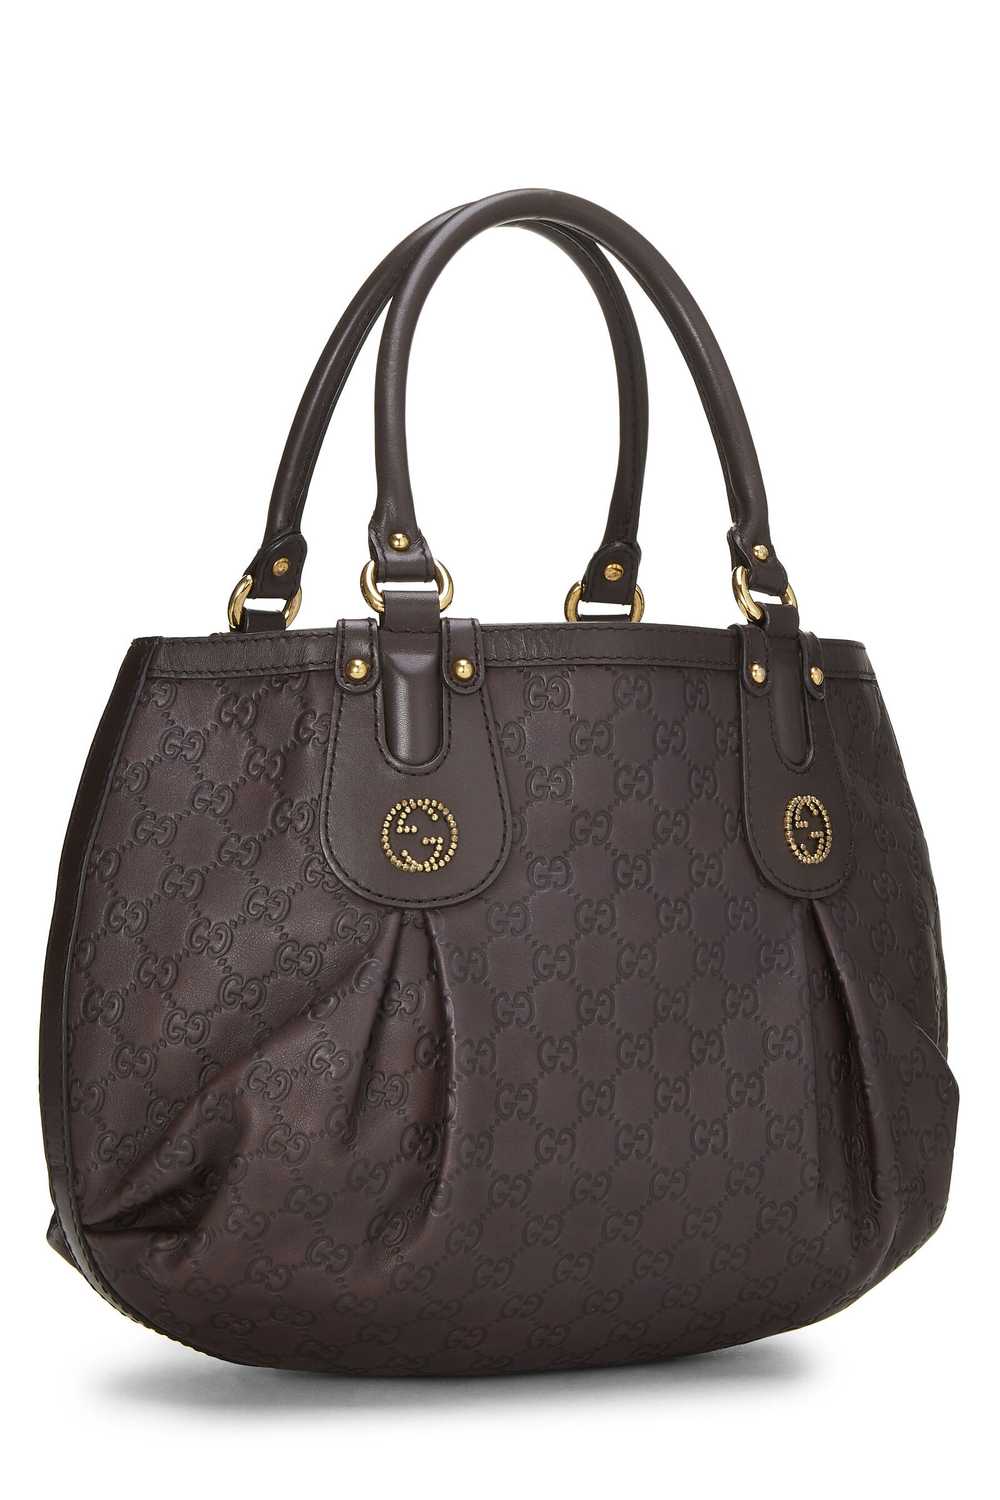 Brown Guccissima Beaded Studded Handbag - image 2